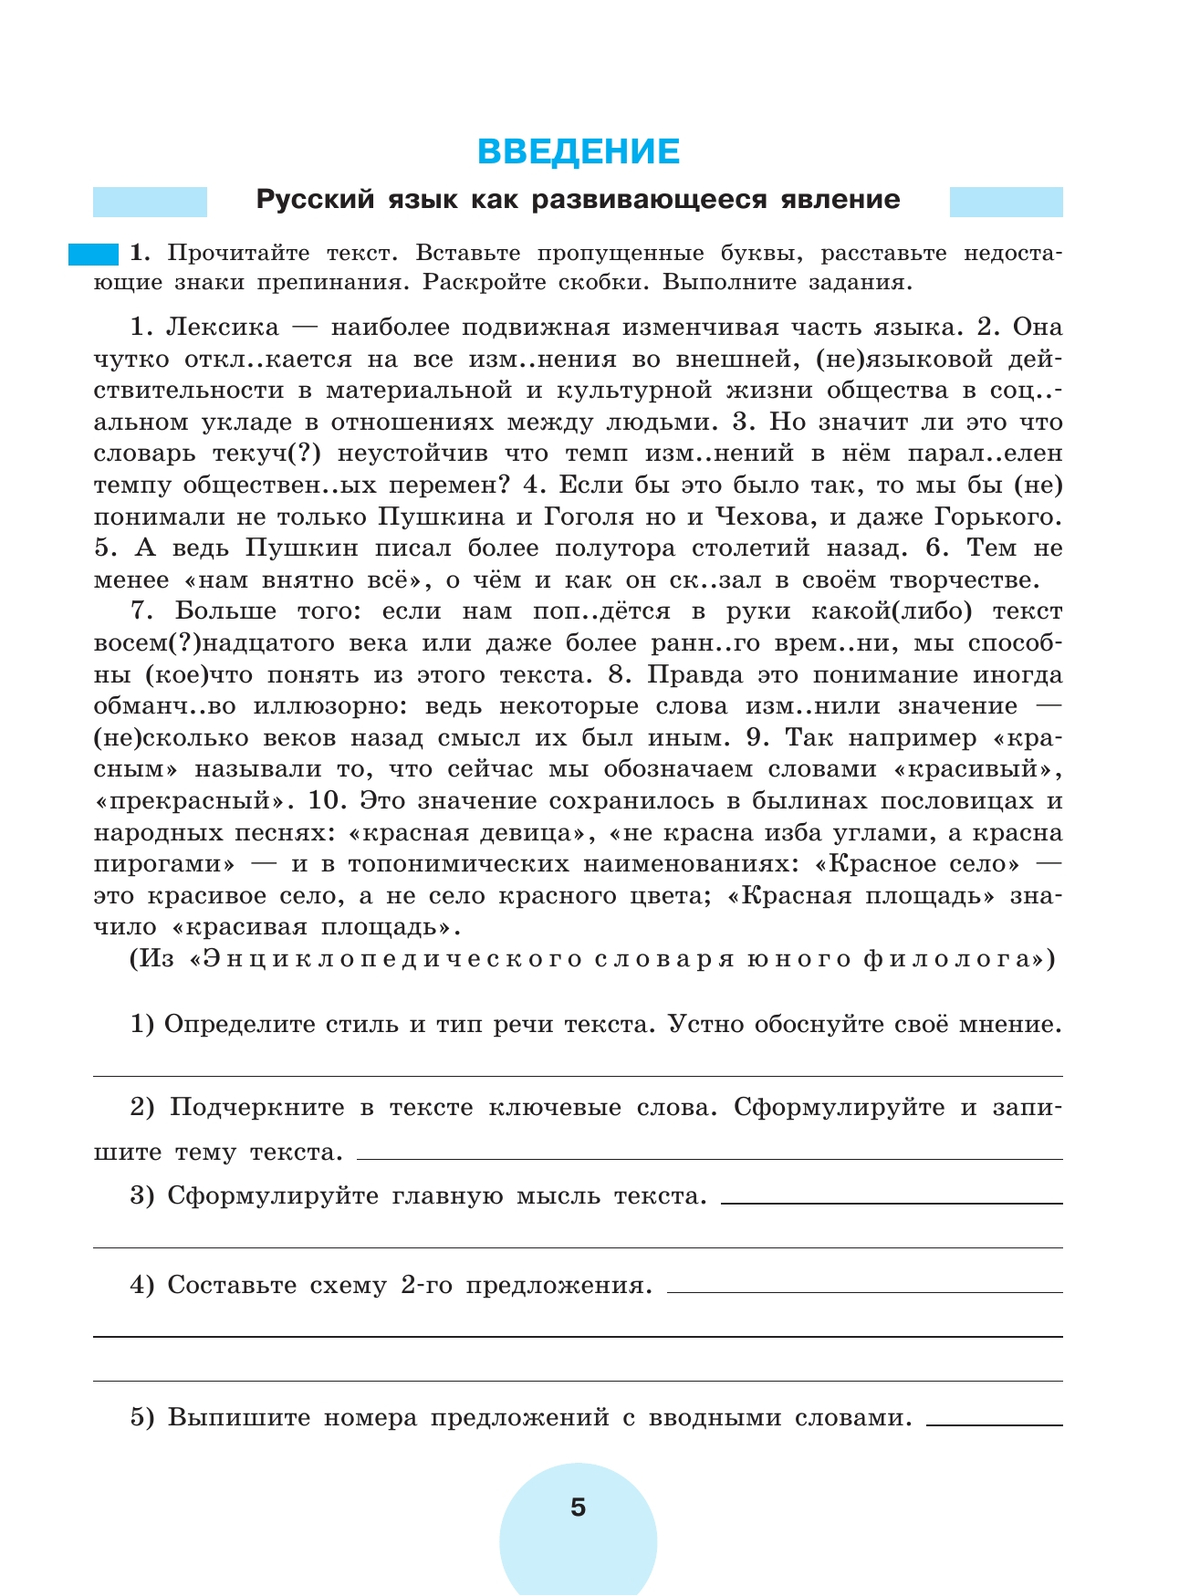 Русский язык. Рабочая тетрадь. 9 класс. В 2 ч. Часть 1 5